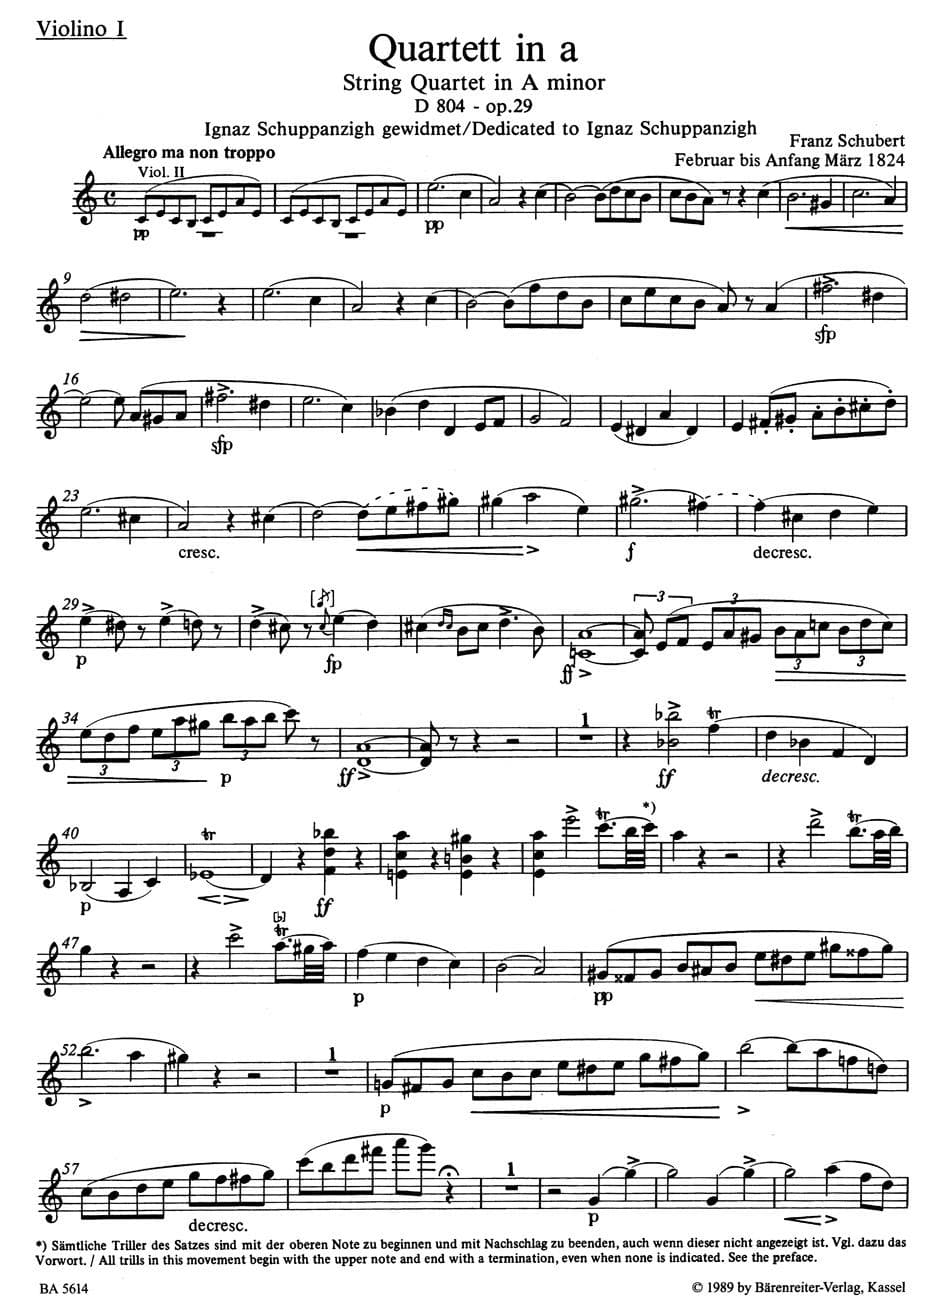 Schubert, Franz - Quartets in a minor and c minor URTEXT Published by Barenreiter Verlag